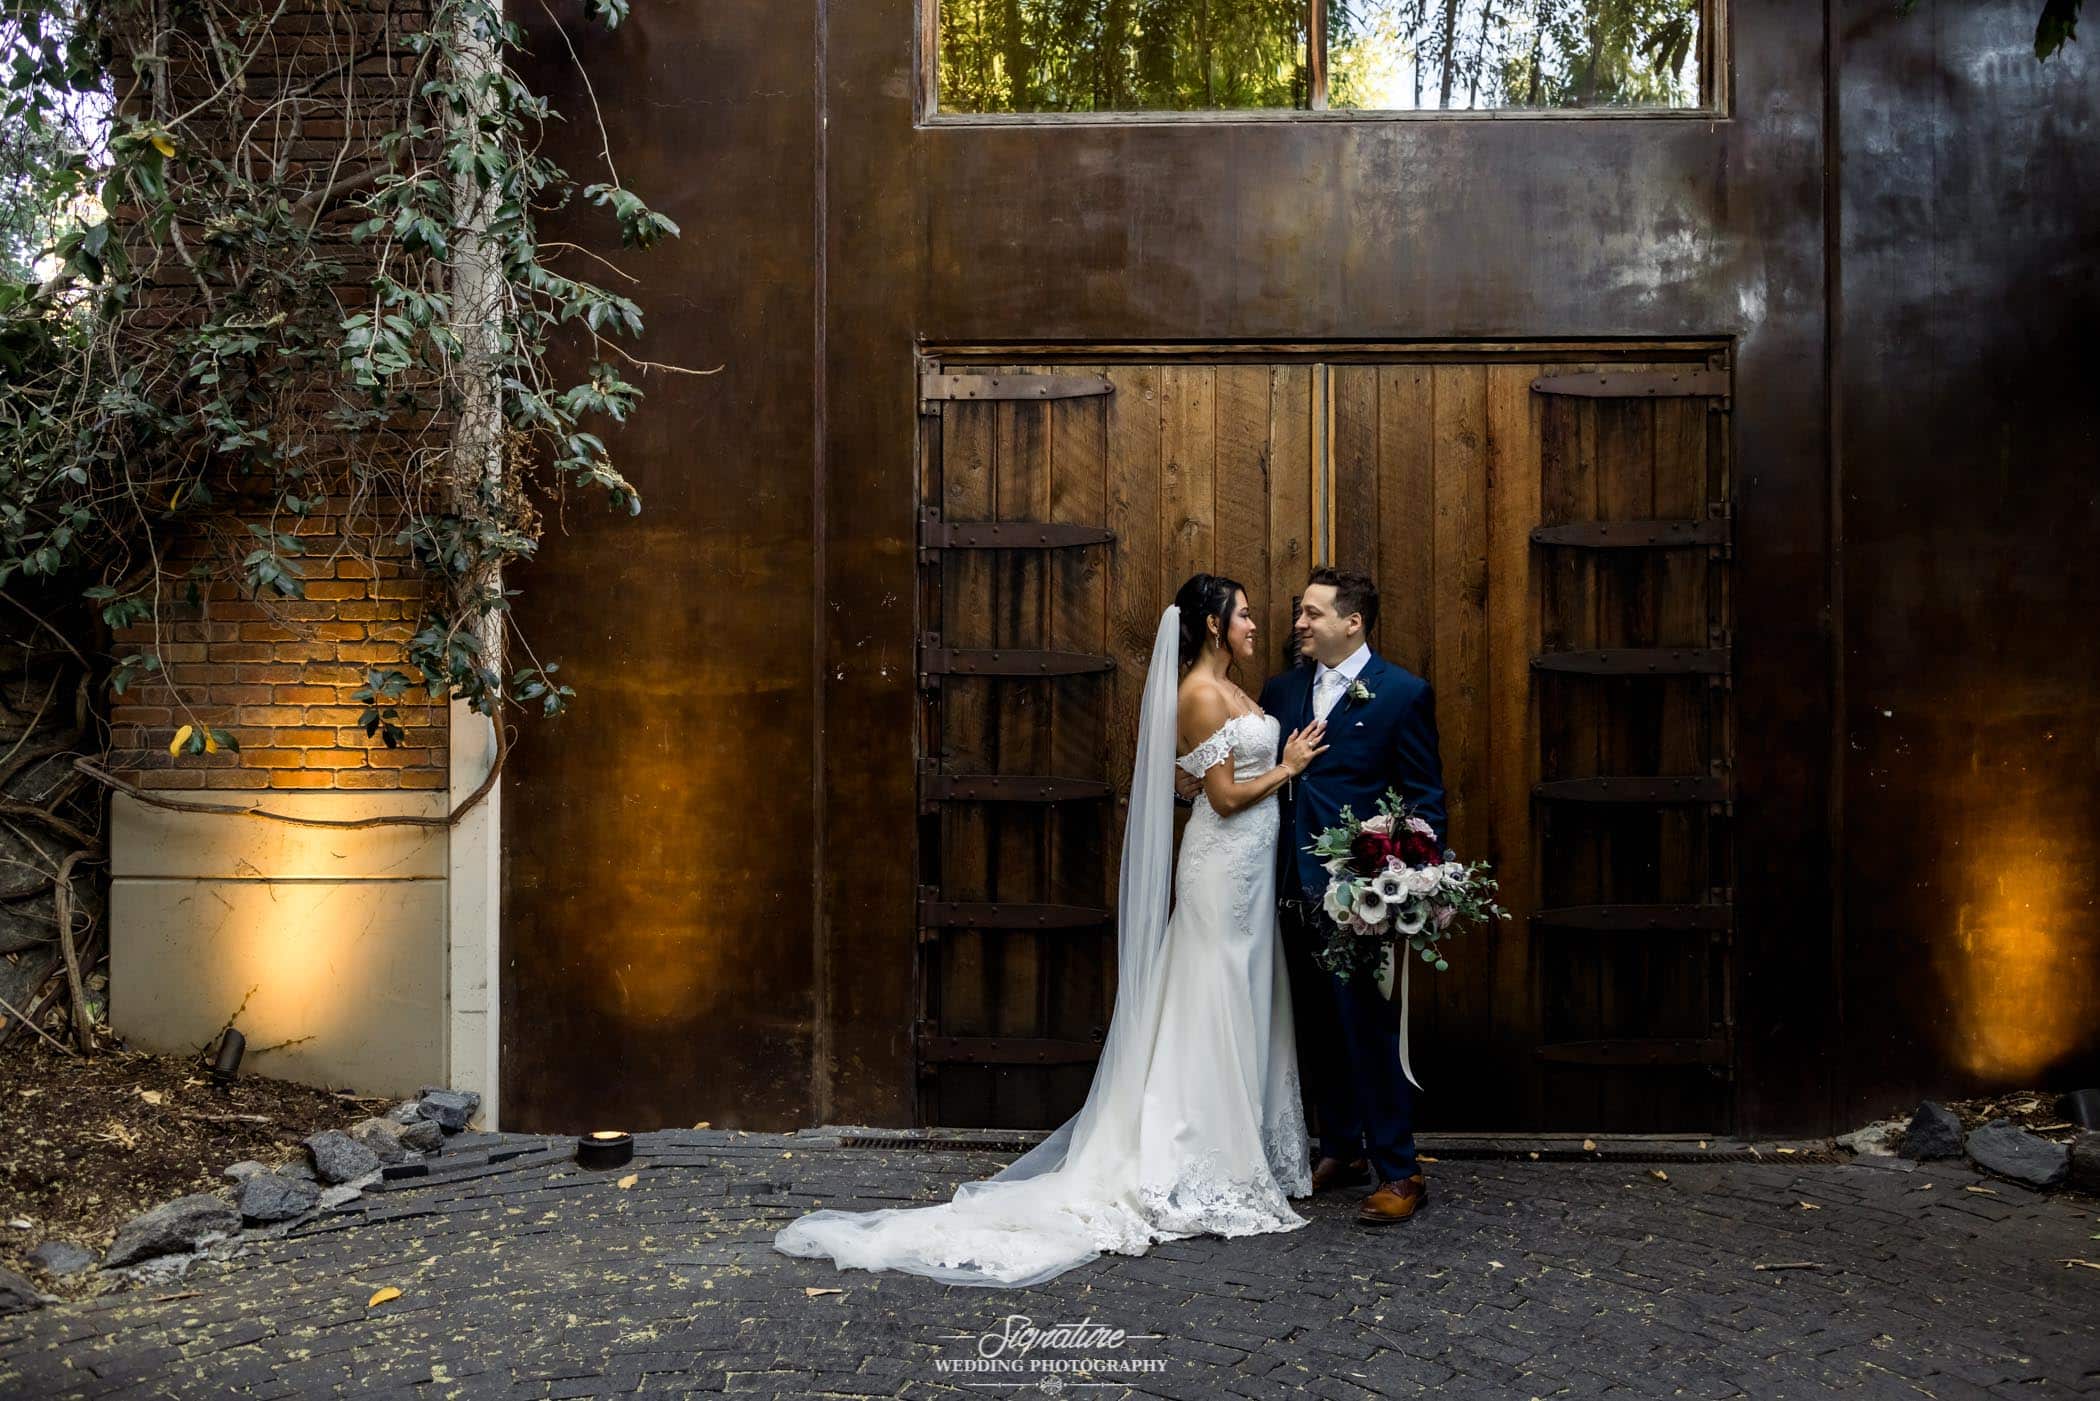 Bride and groom in front of wooden door